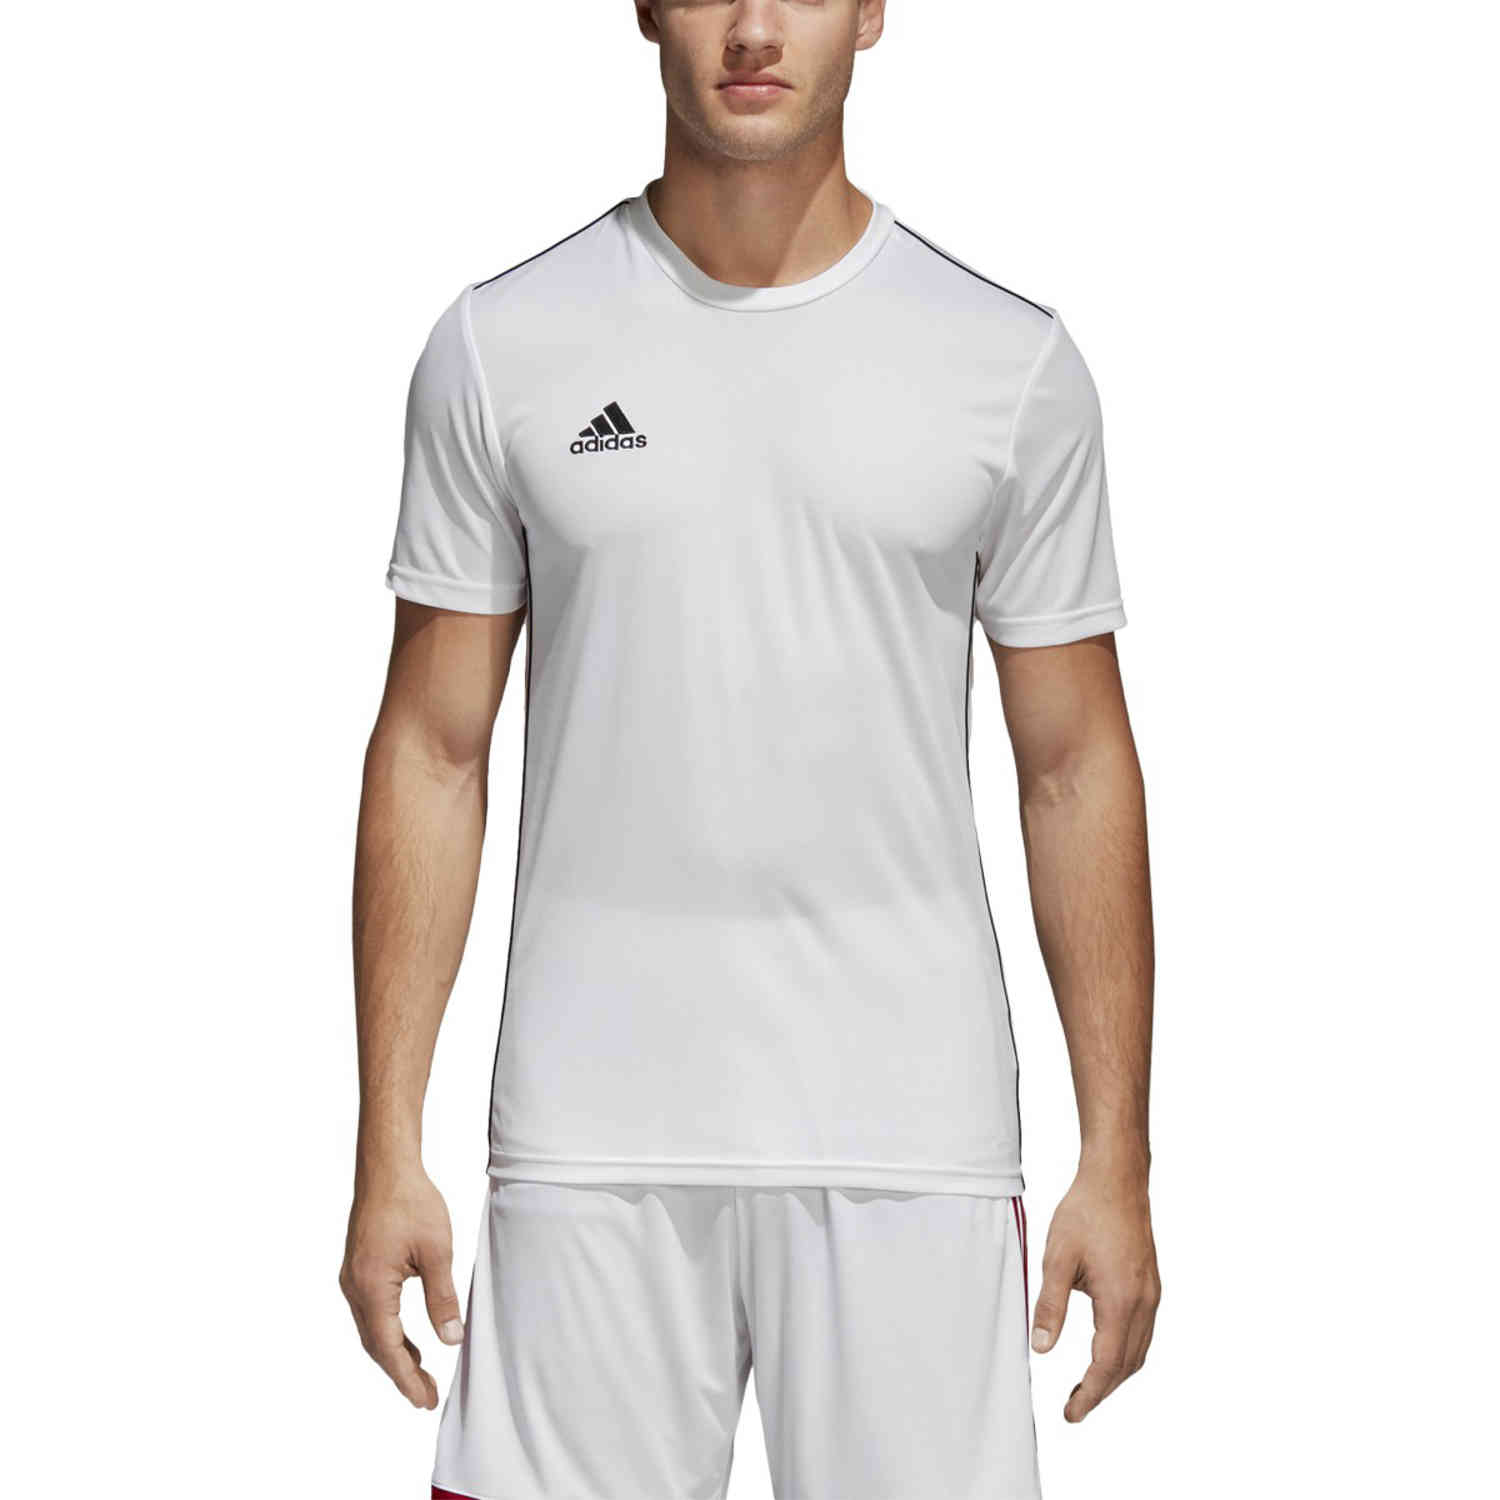 adidas Core 18 Training Jersey - White/Black - SoccerPro